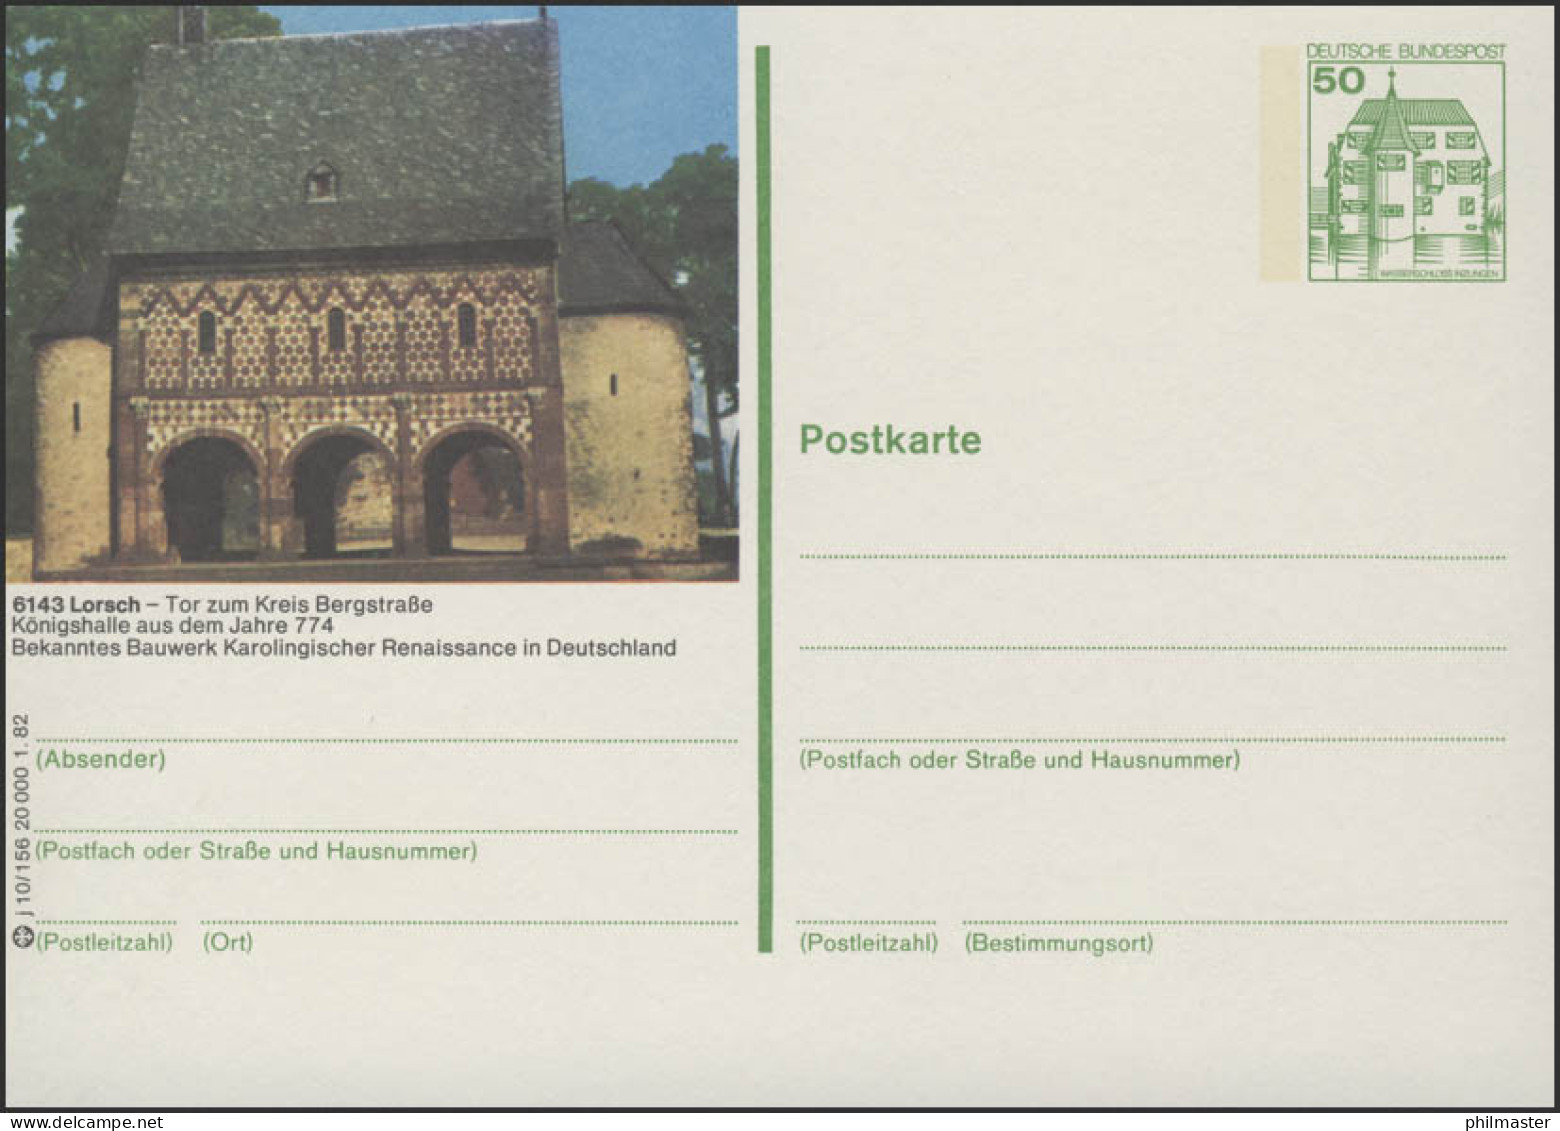 P134-j10/156 6143 Lorsch - Königshalle ** - Cartes Postales Illustrées - Neuves